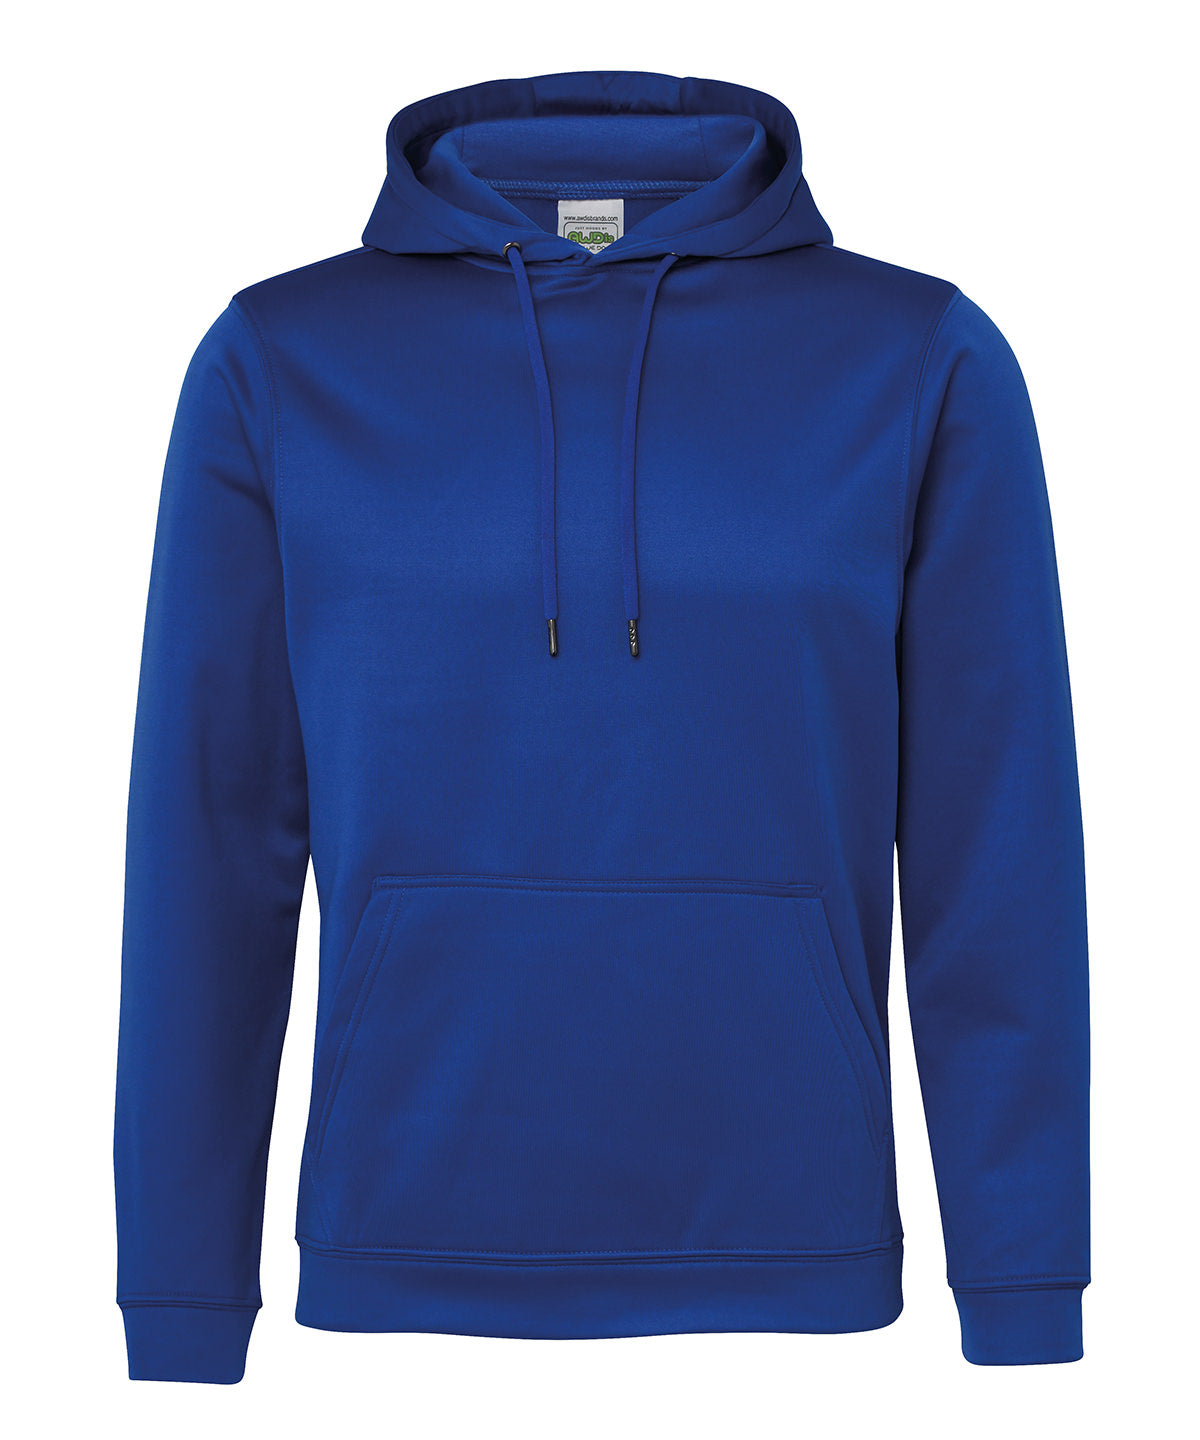 Personalised Hoodies - Dark Blue AWDis Just Hoods Sports polyester hoodie